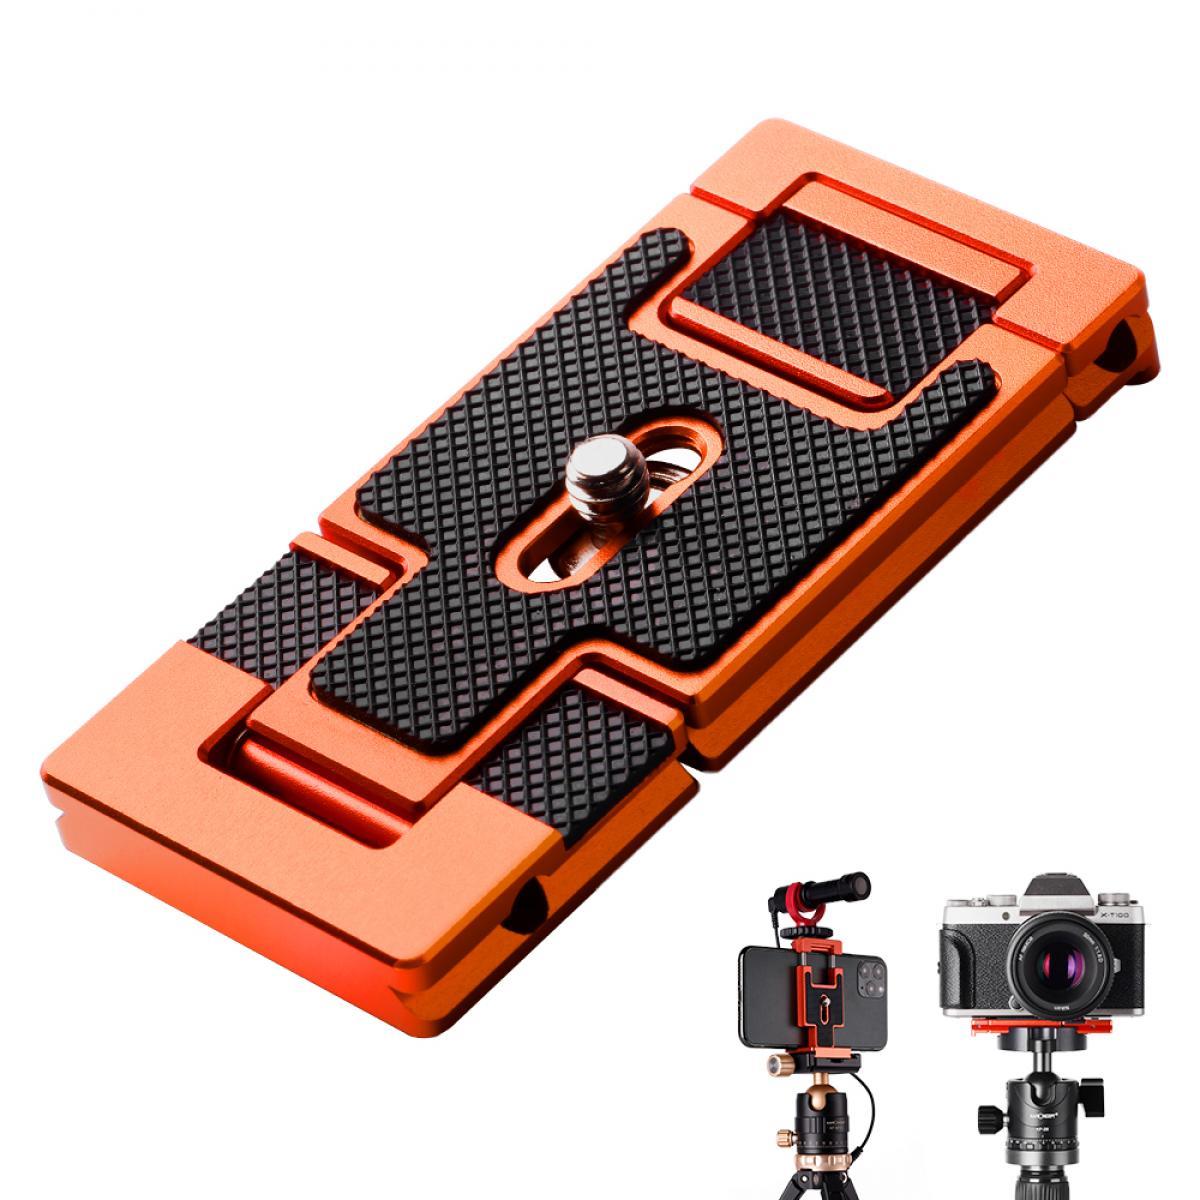 KF Concept 2-в-1 Arca Swiss QR Plate для камеры и смартфона, оранжевый